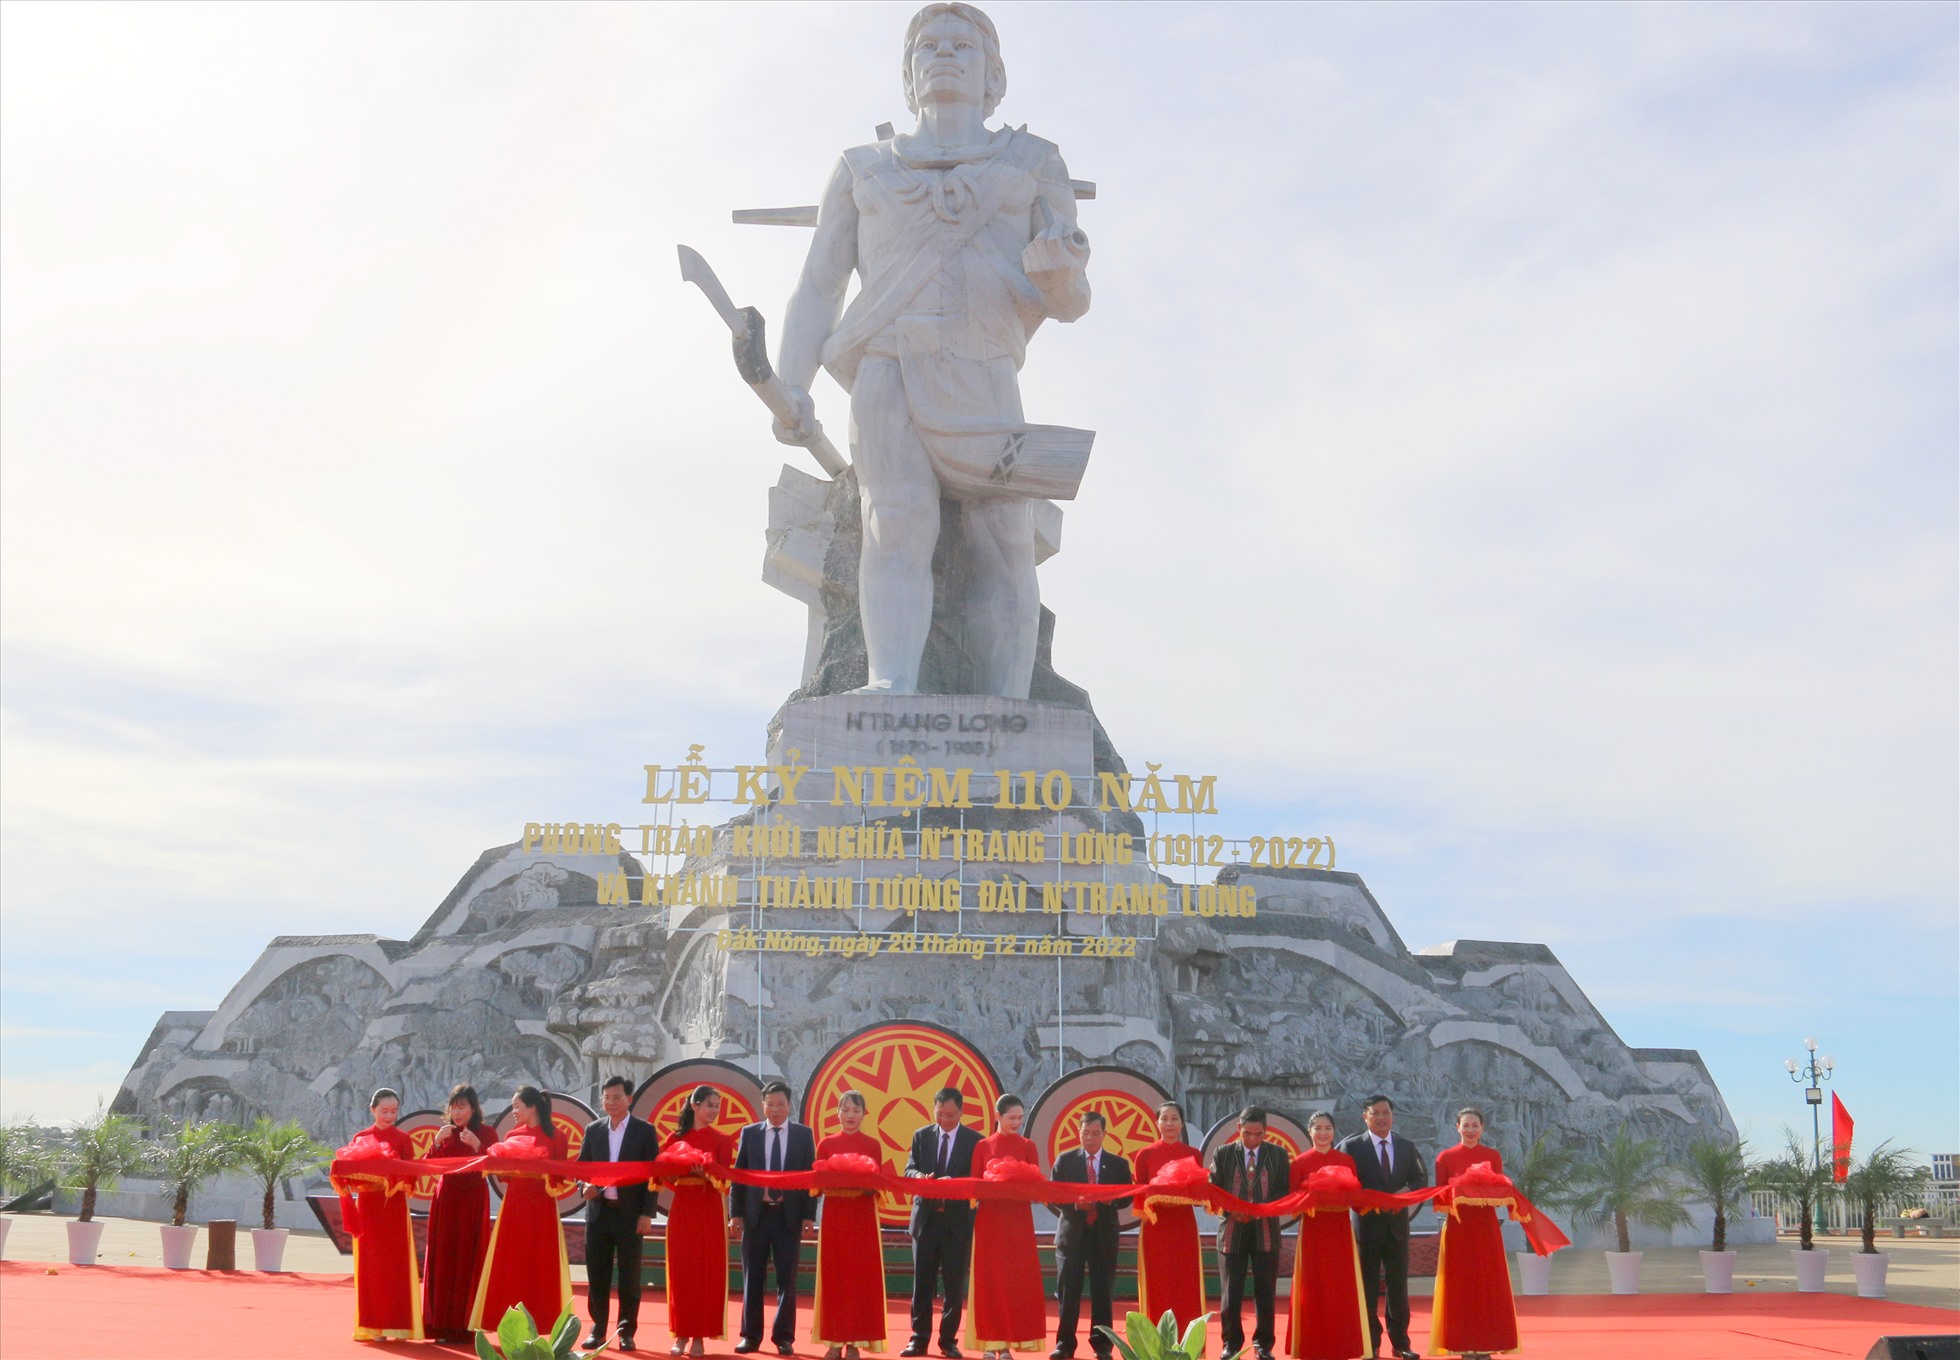 Các lãnh đạo Tỉnh ủy, Hội đông Nhân dân, UBND, Ủy ban Mặt trận tỉnh Đắk Nông cắt băng khánh thành tượng đài N'Trang Lơng. Ảnh: Dương Phong